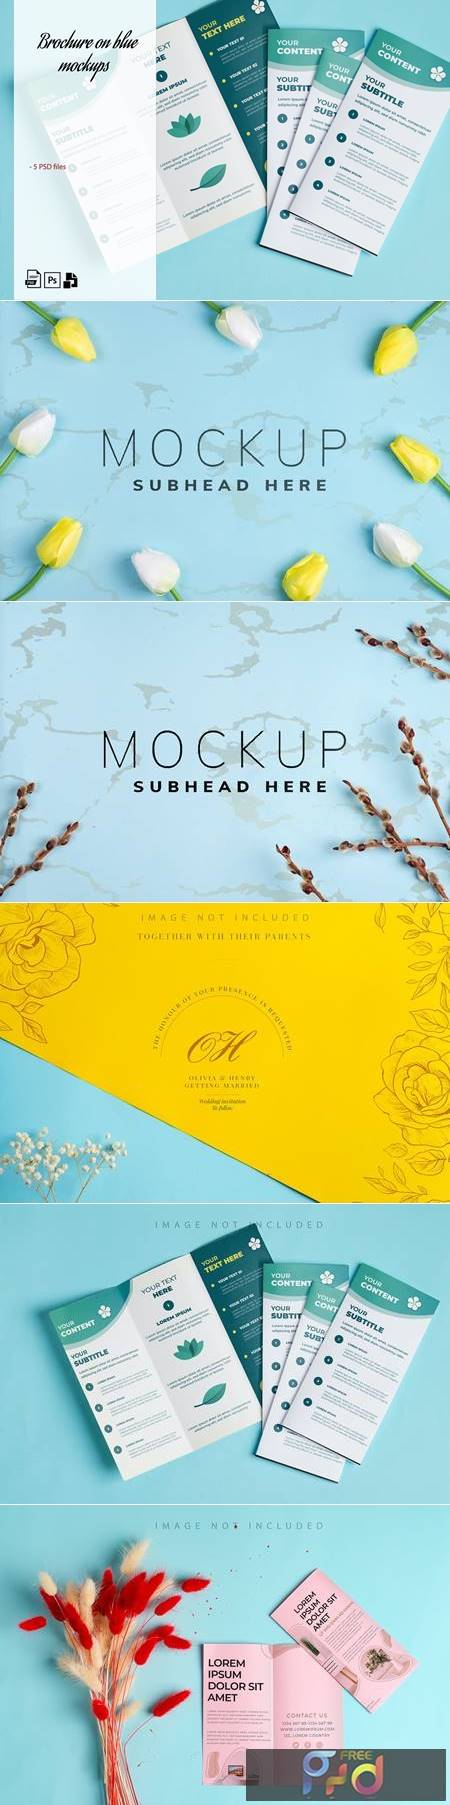 Mockup brochures & backdrop on blue 7TE4A99 1